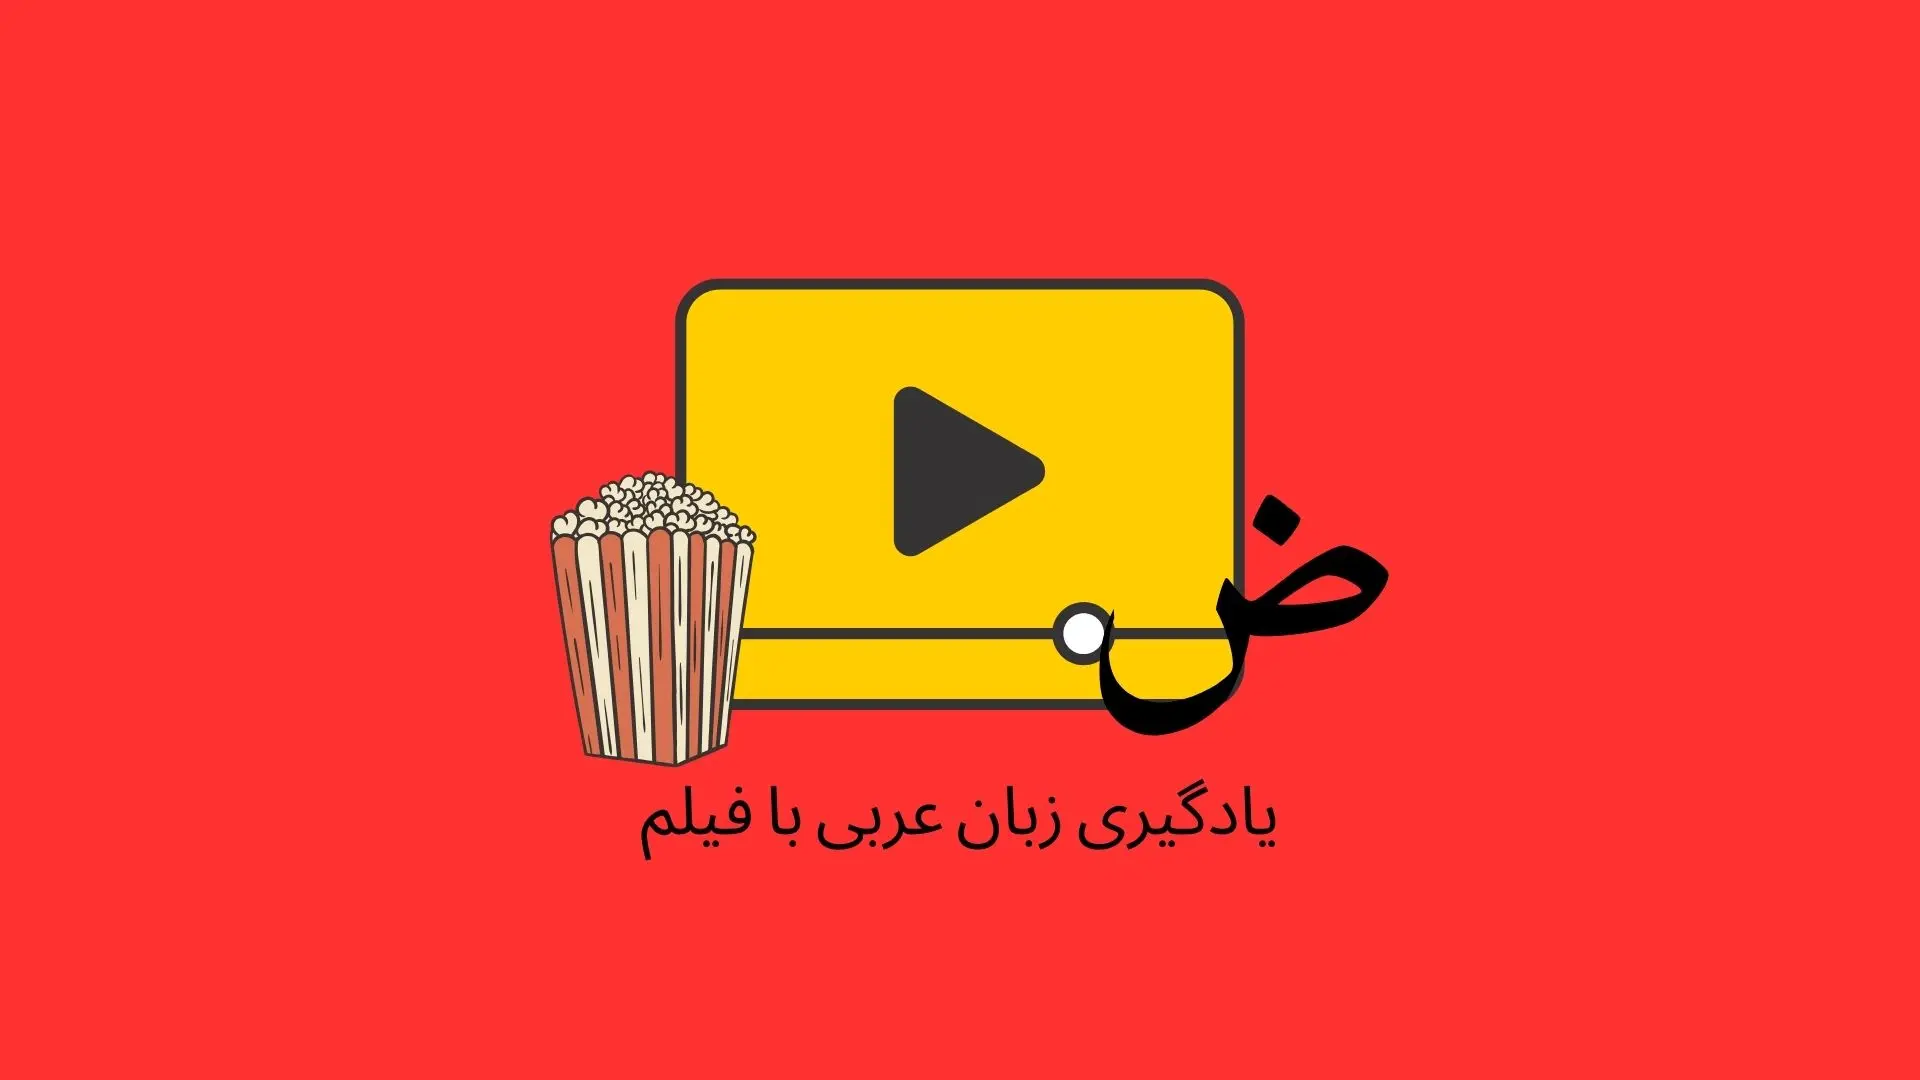  7 راز یادگیری زبان عربی از طریق فیلم